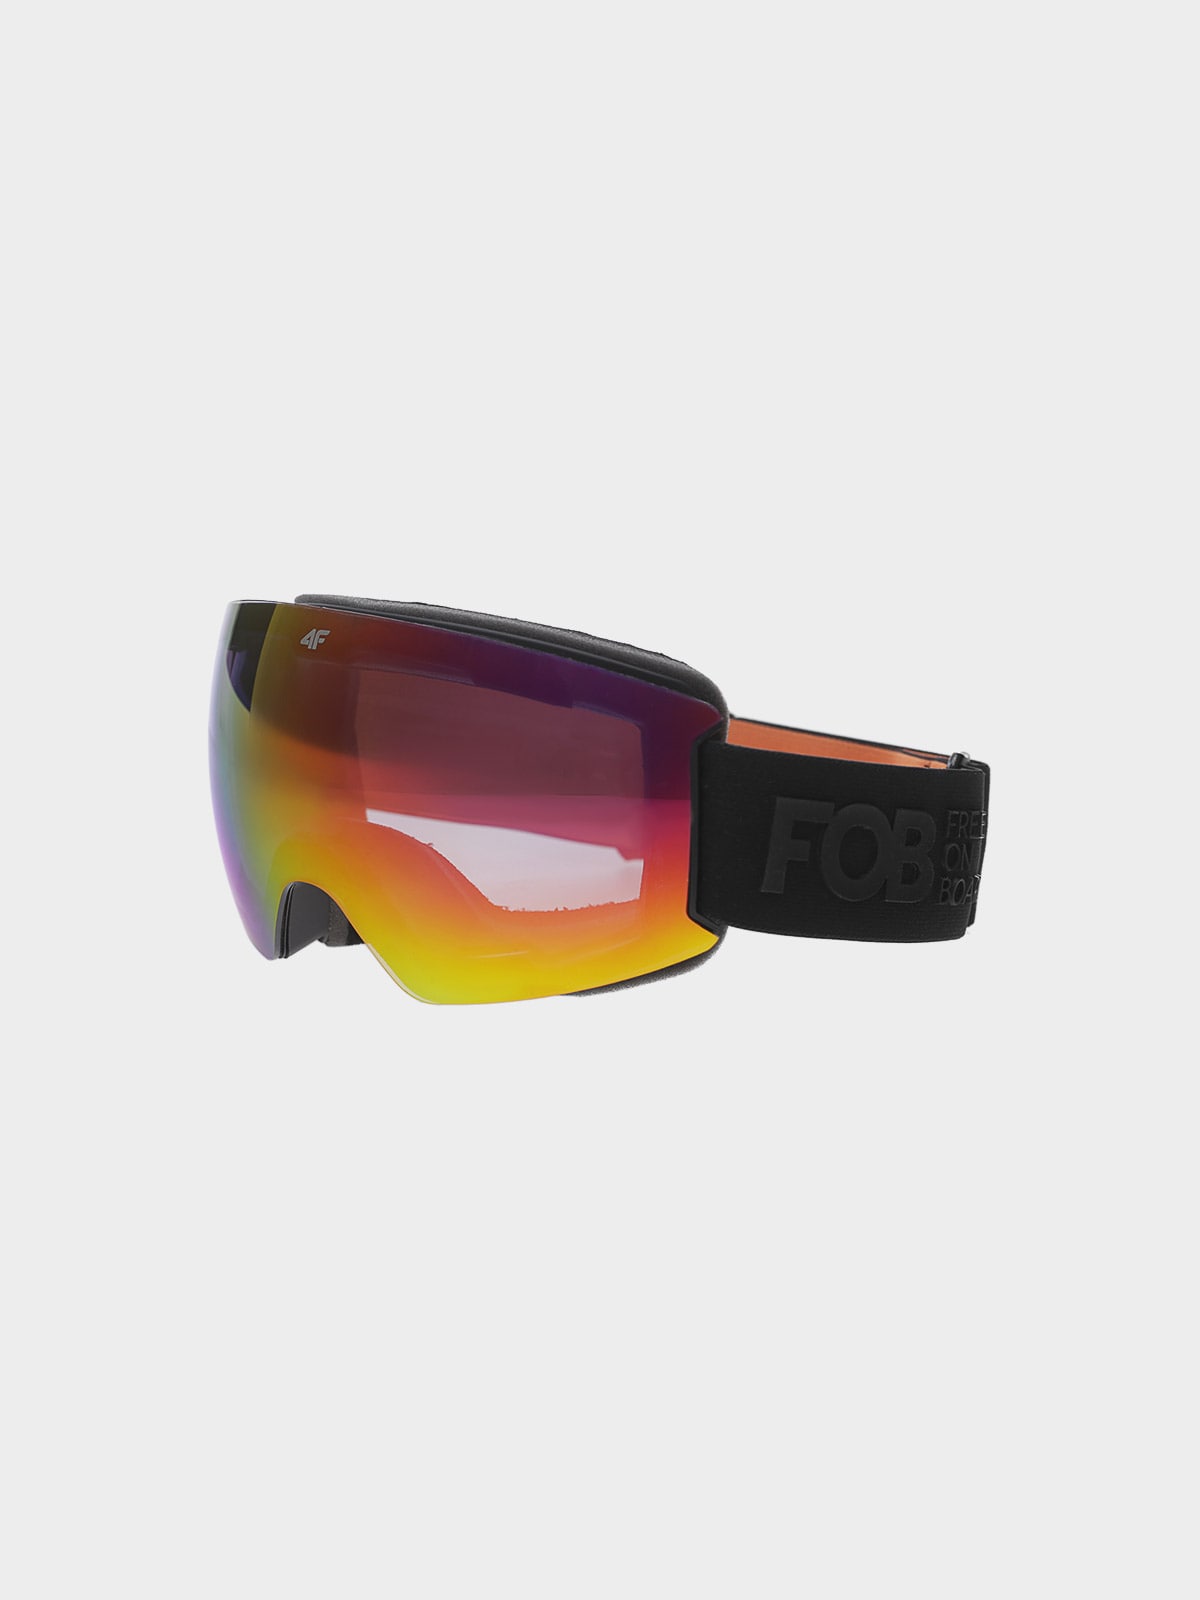 Pánske snowboardové okuliare s viacfarebným povrchom